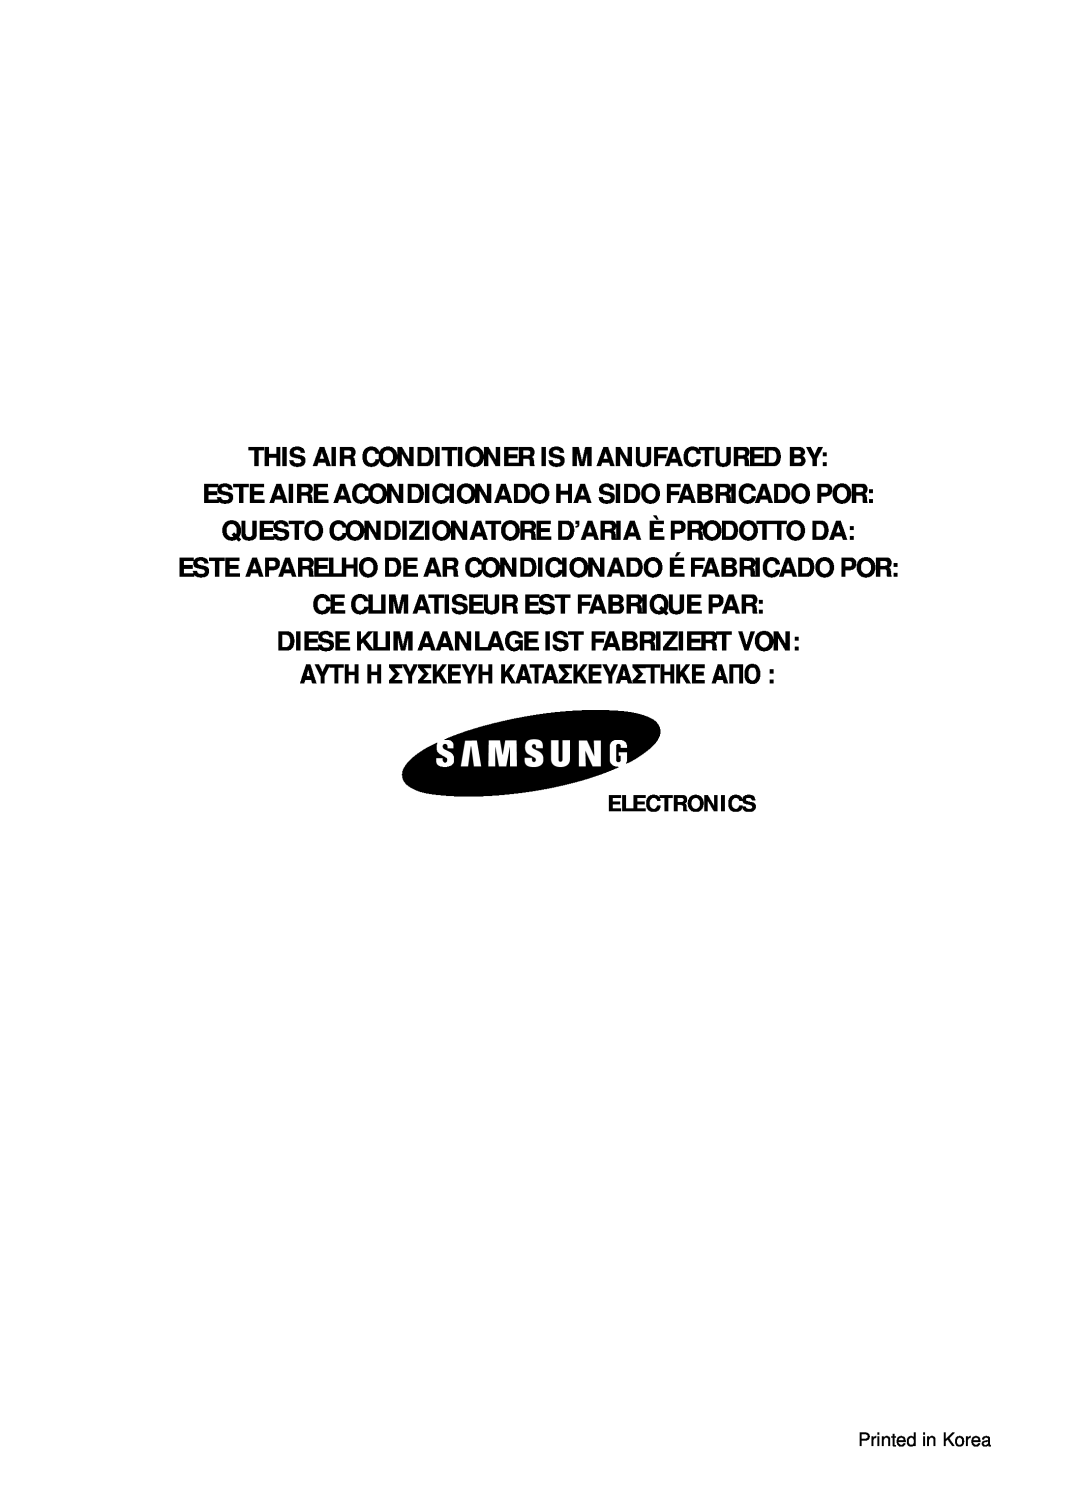 Samsung SH07ZA3X Este Aparelho De Ar Condicionado É Fabricado Por, Electronics, This Air Conditioner Is Manufactured By 